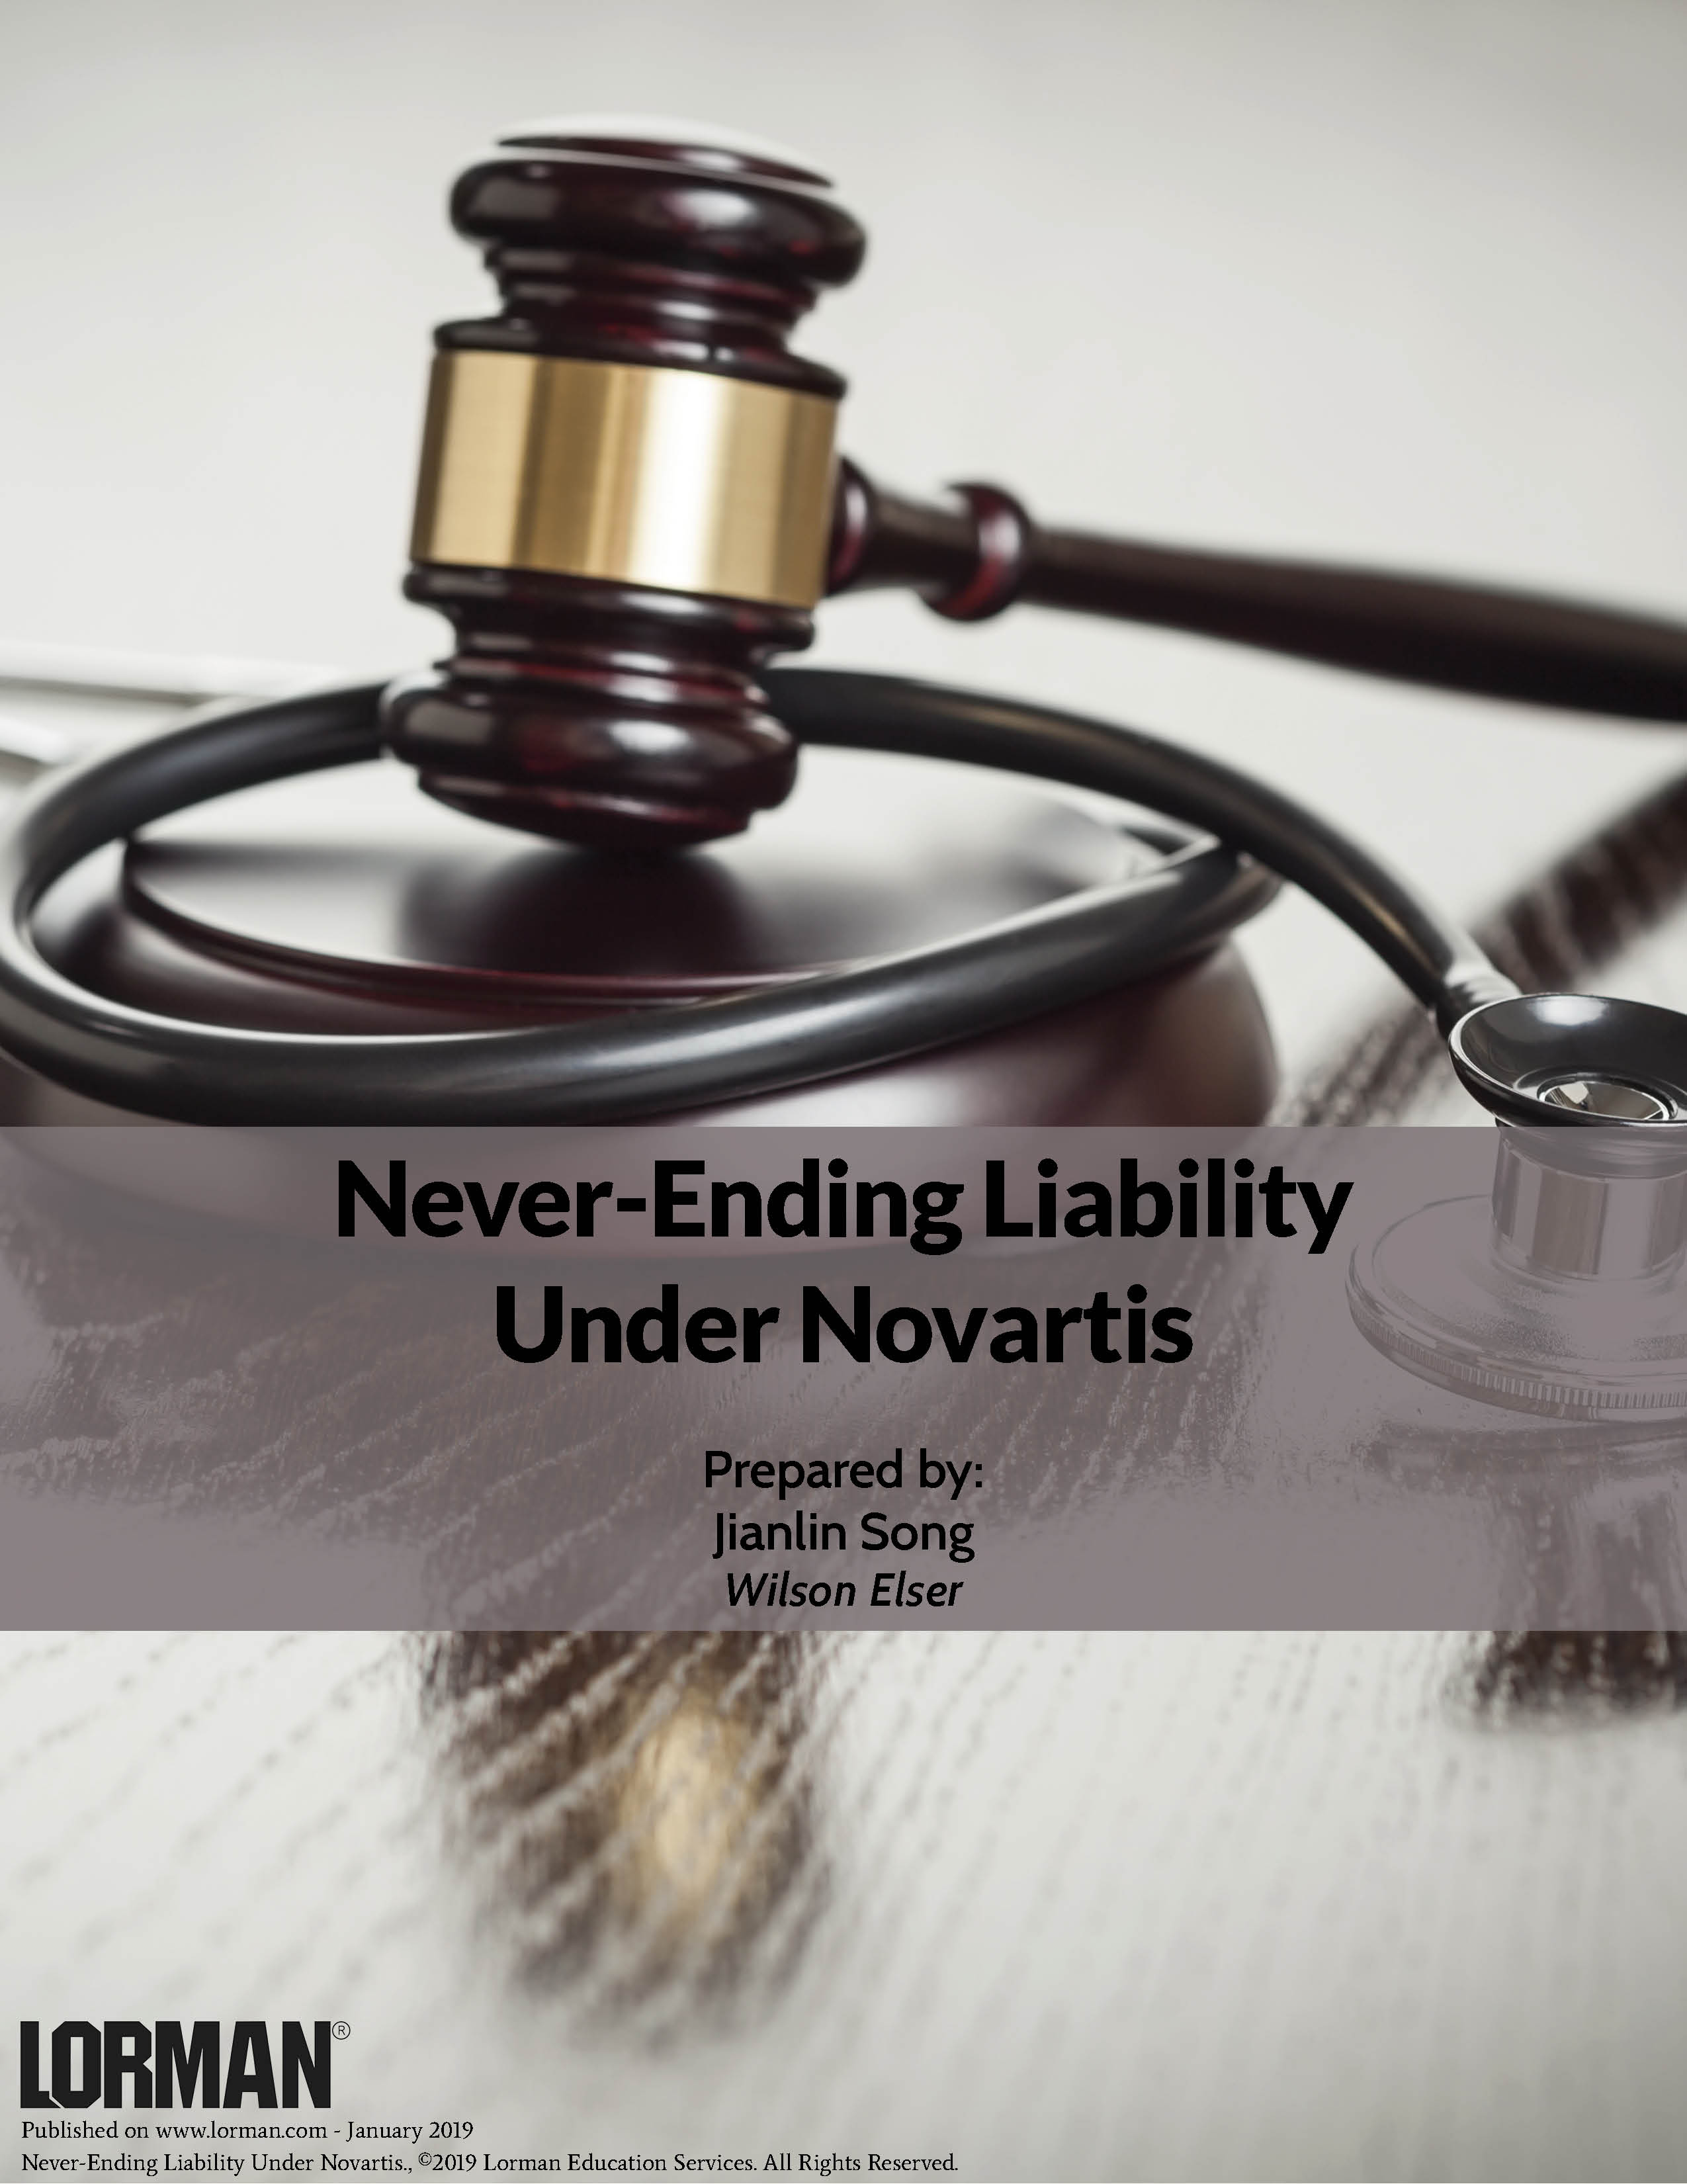 Never-Ending Liability Under Novartis